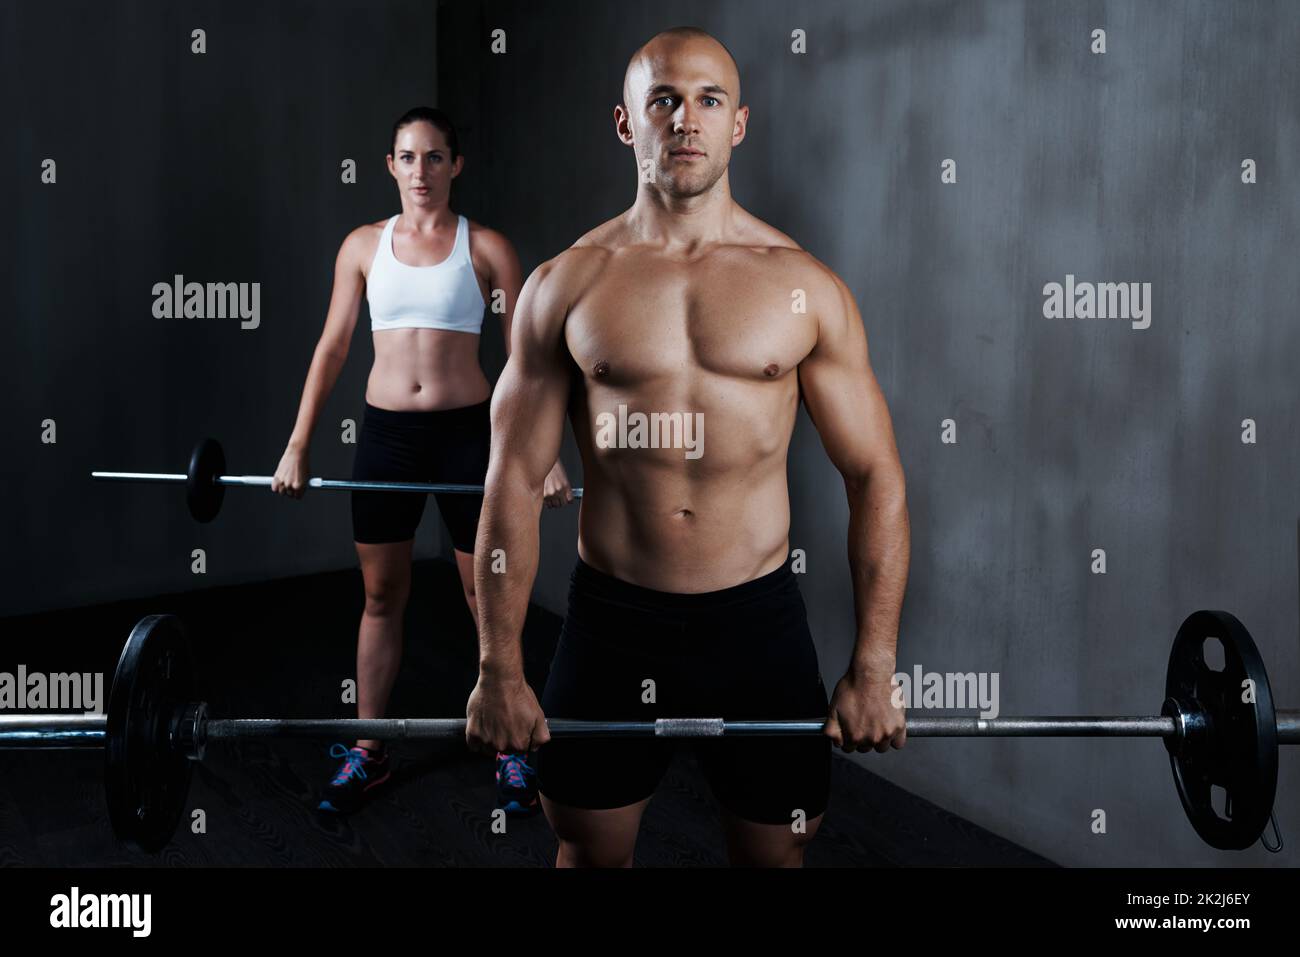 Training, um fit zu werden. Kurzer Schuss eines Mannes und einer Frau, die mit den Langhanteln arbeiten. Stockfoto